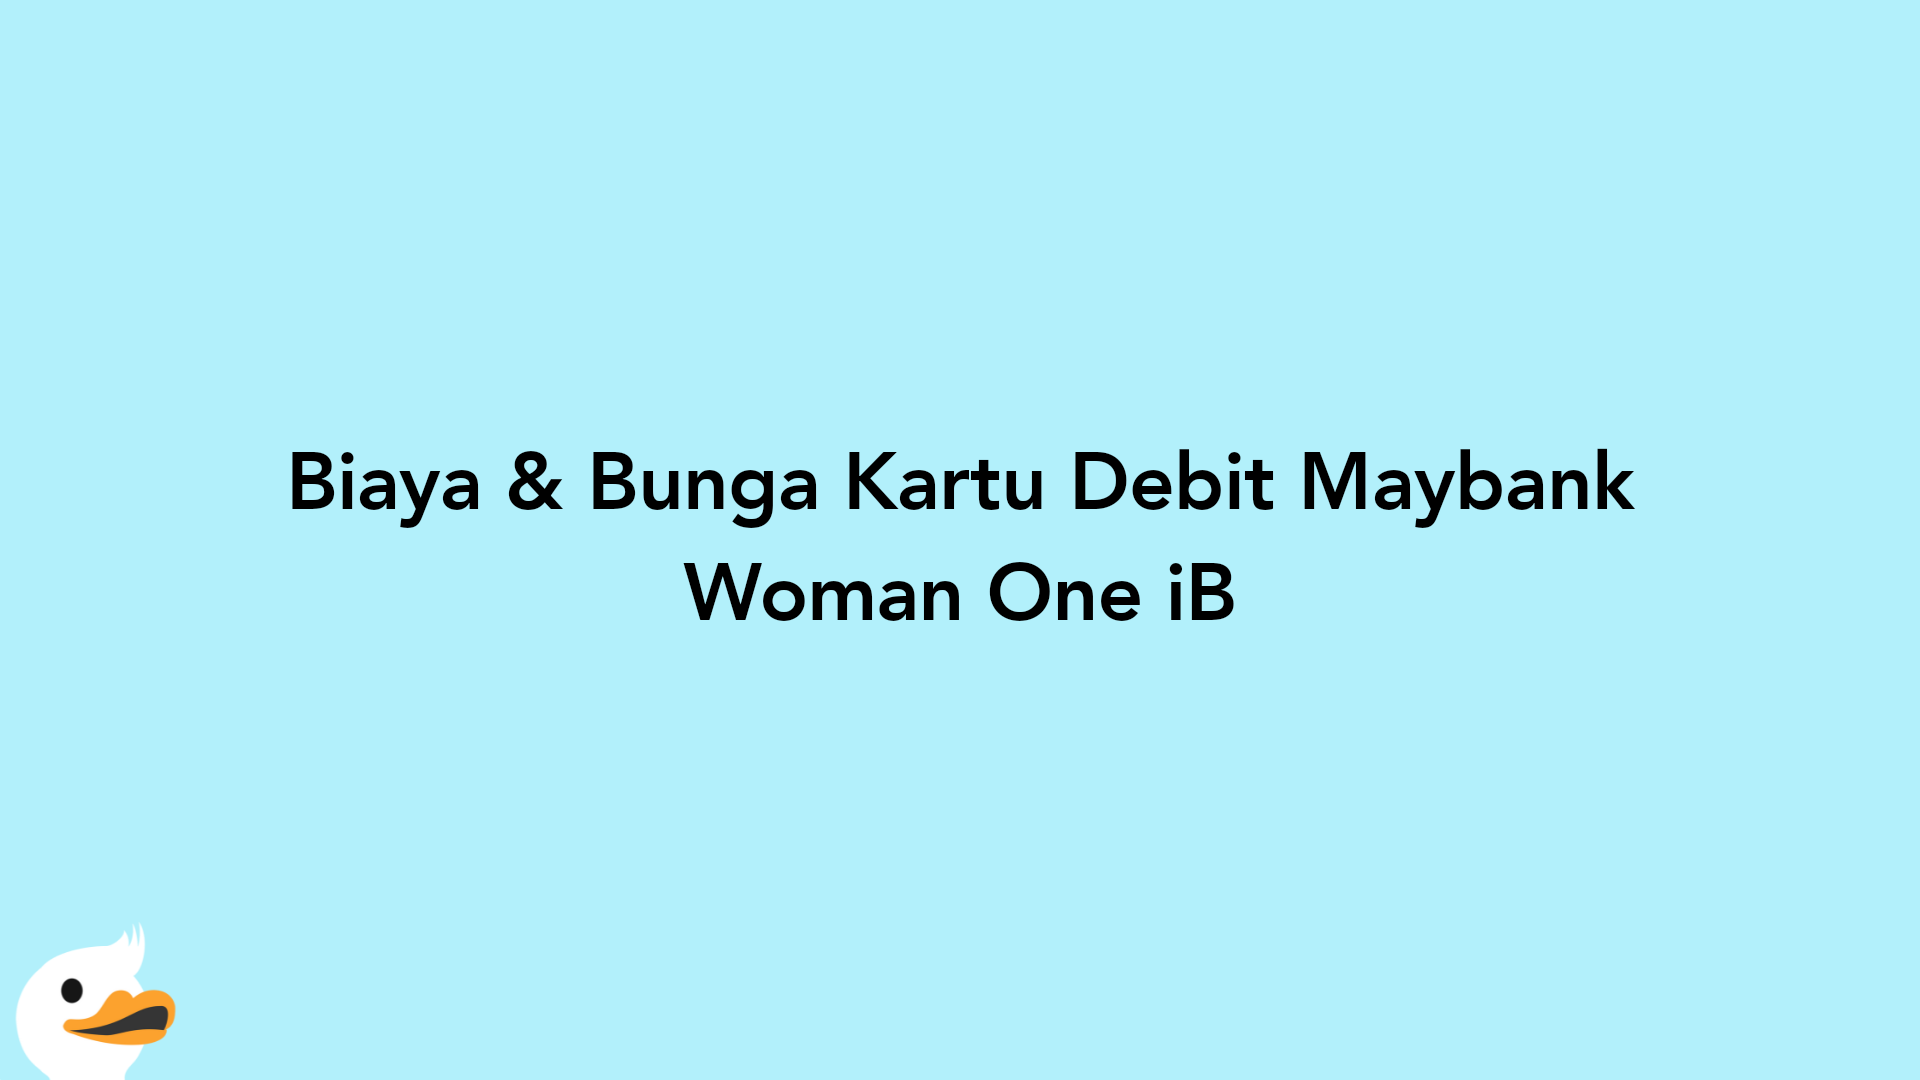 Biaya & Bunga Kartu Debit Maybank Woman One iB